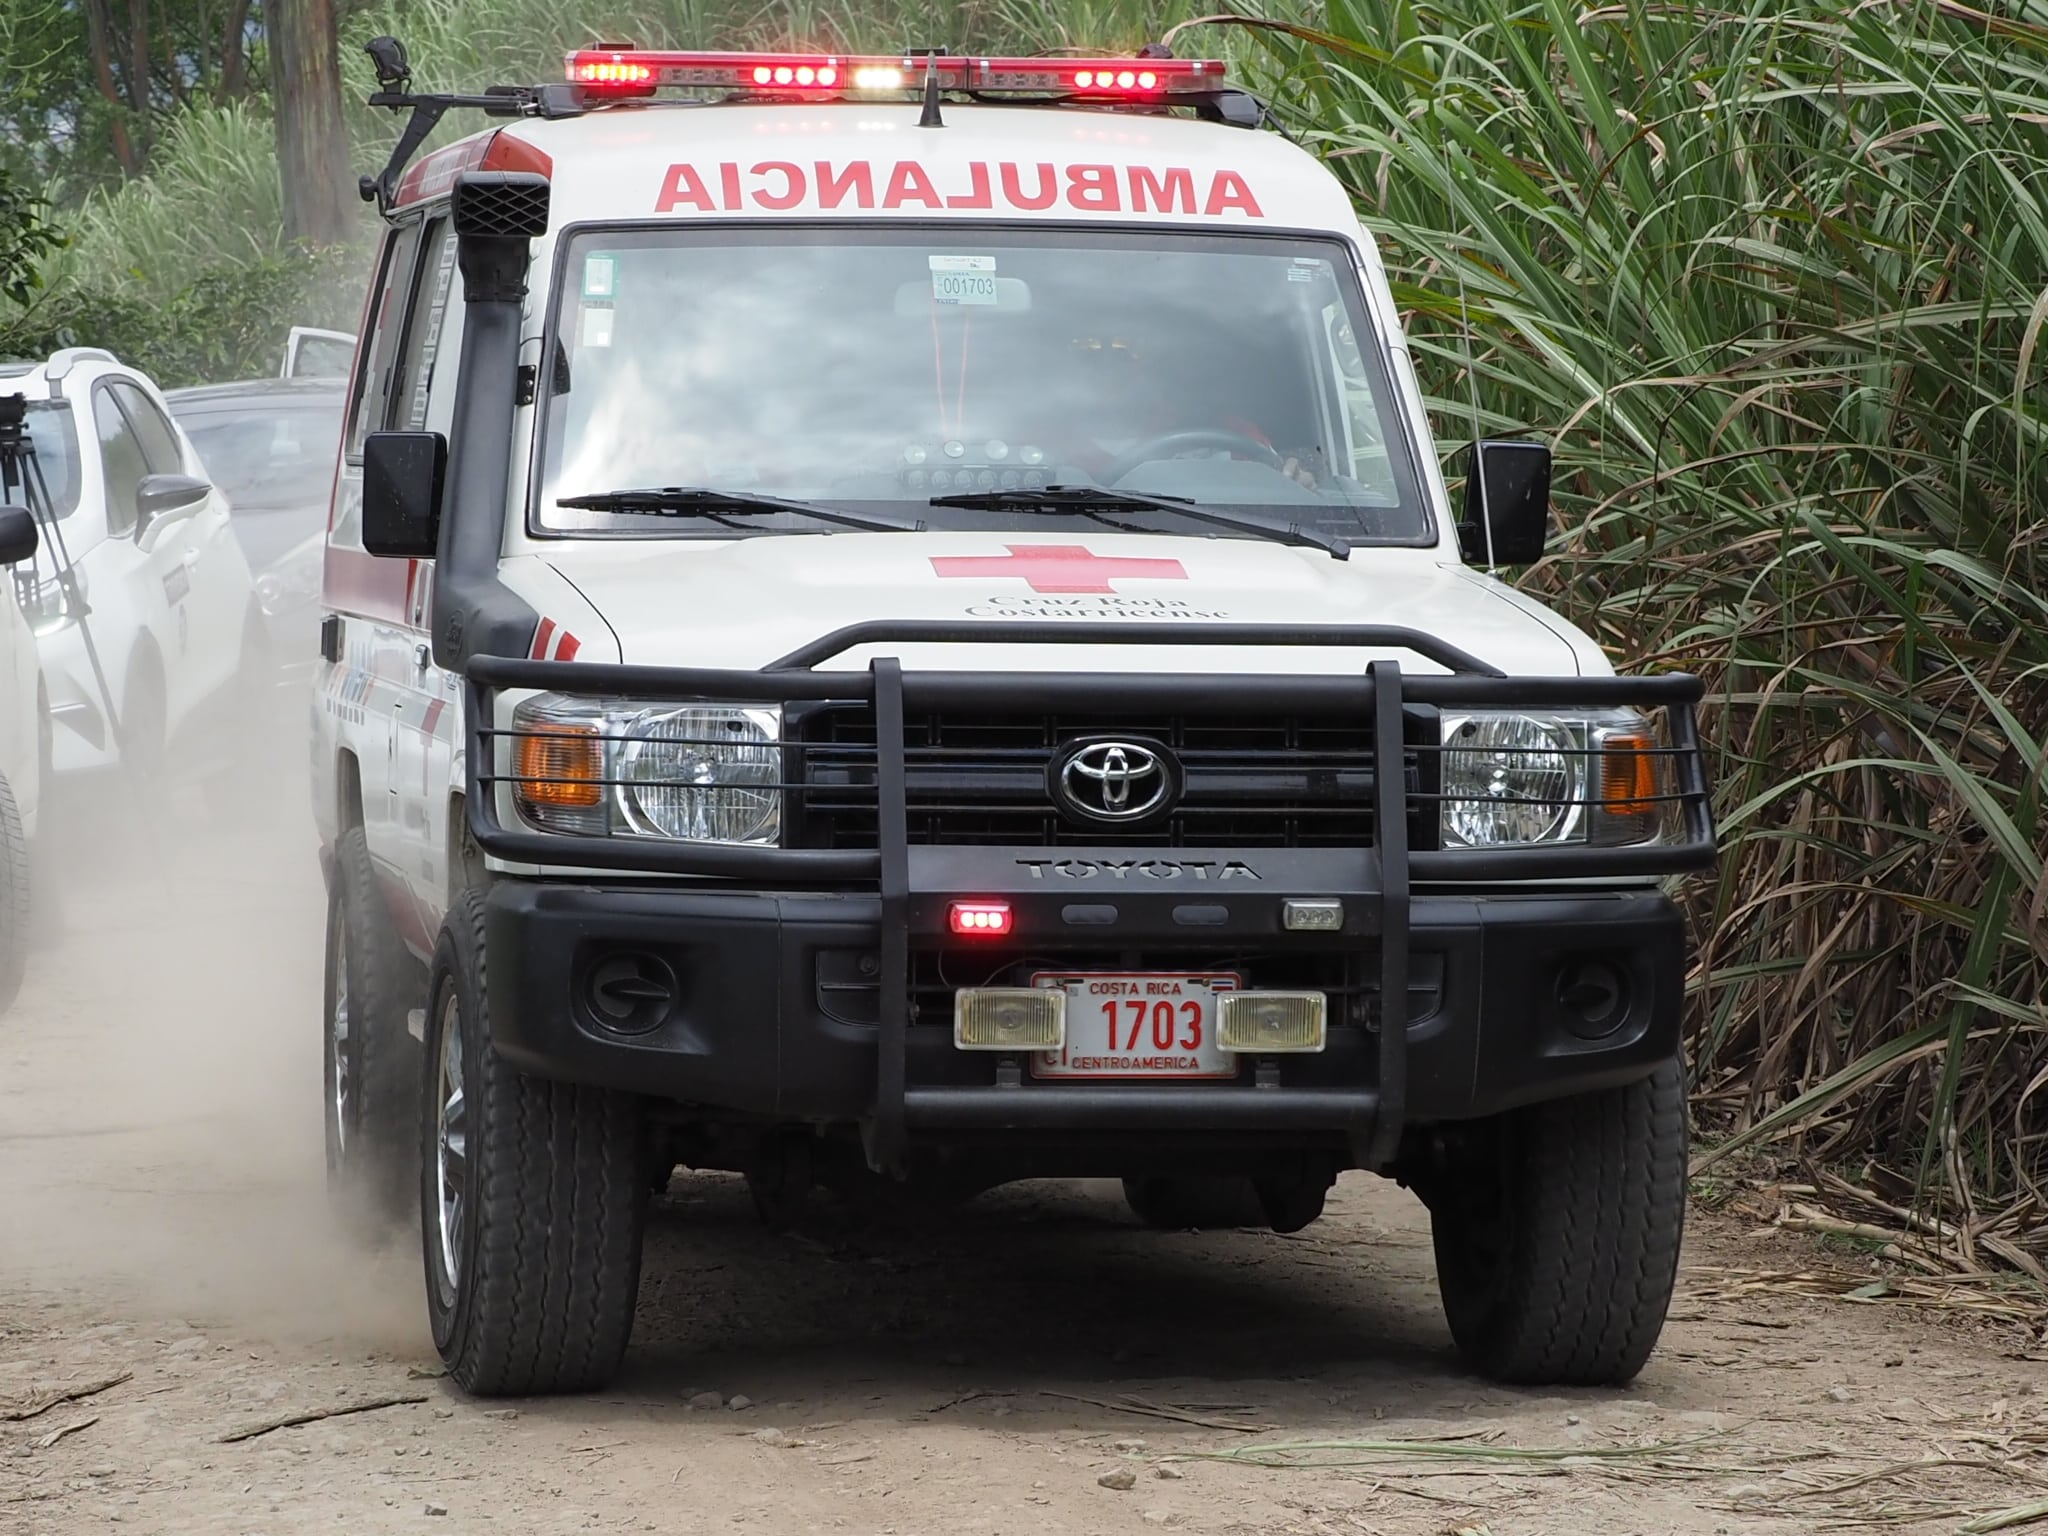 180 cruzrojistas y 50 “heridos”: todo listo para  simulacro de emergencia en Volcán Irazú este domingo